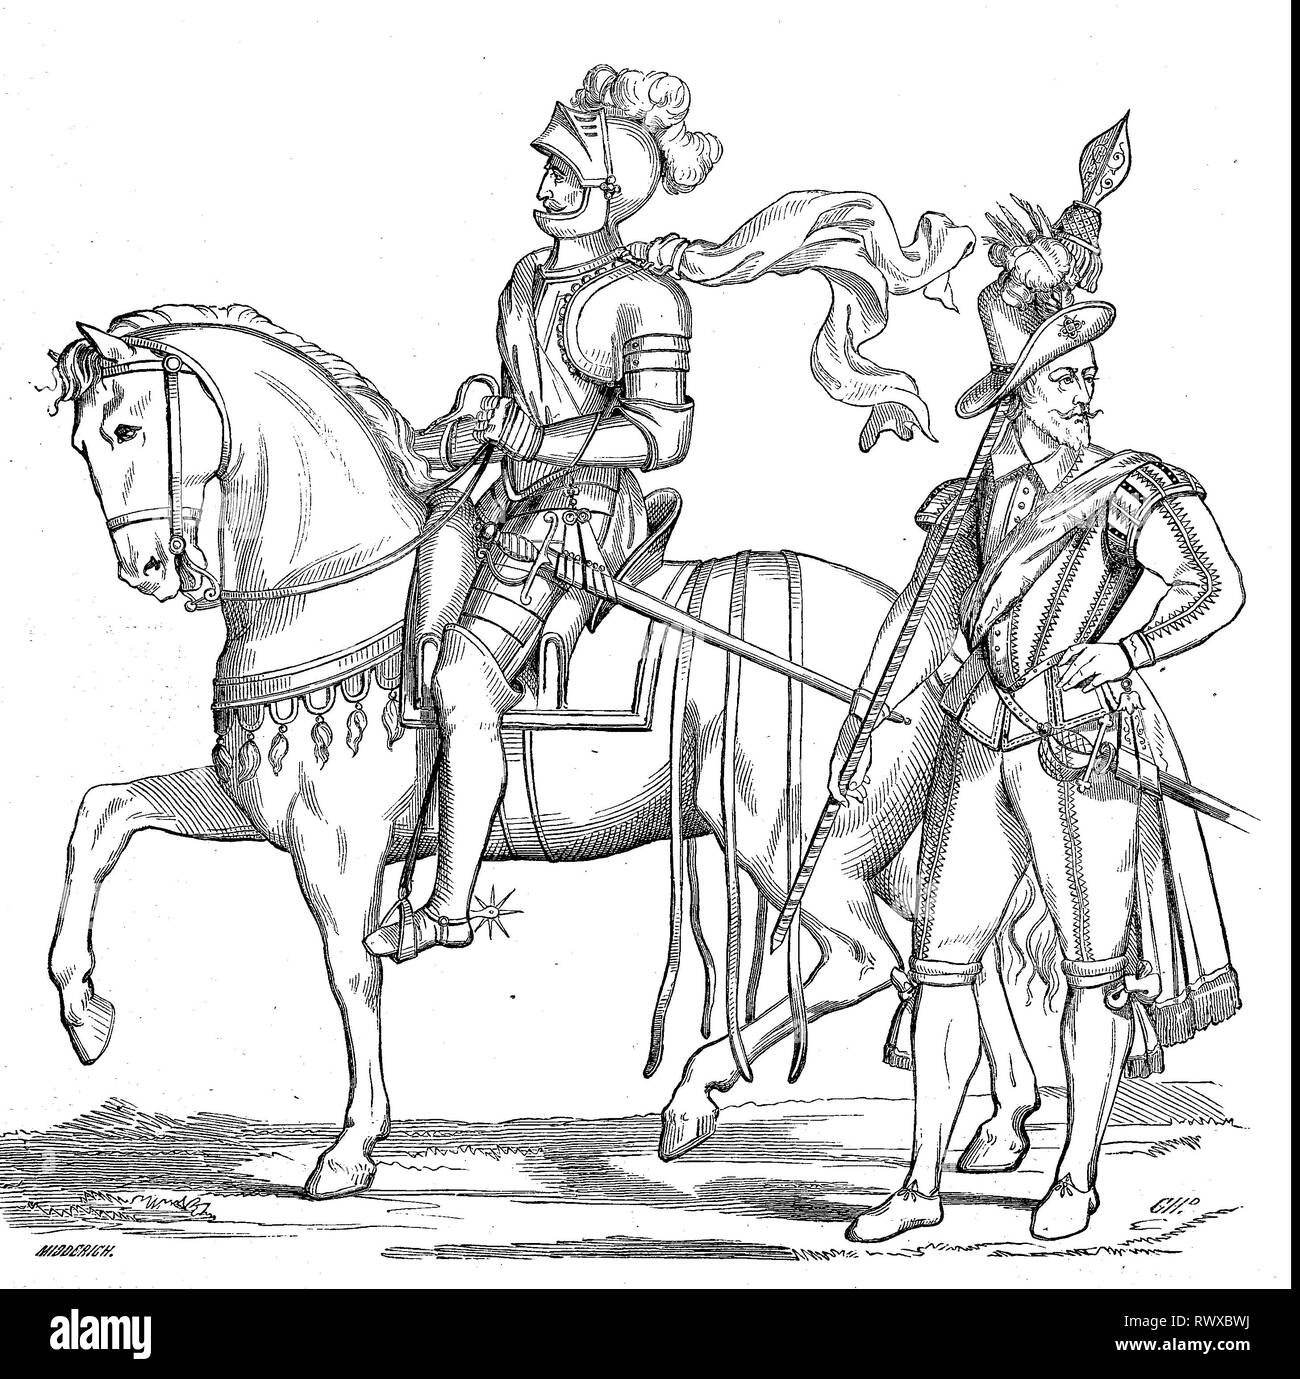 Ein Gendarm im Jahre 1593, ein KapitÃ¤n aus der Ehrengarde des KÃ¶nigs, in Rouen, Frankreich/ein gendarm in 1593, ein Hauptmann der Königlichen Garde ehrenhalber, in Rouen, Frankreich Stockfoto